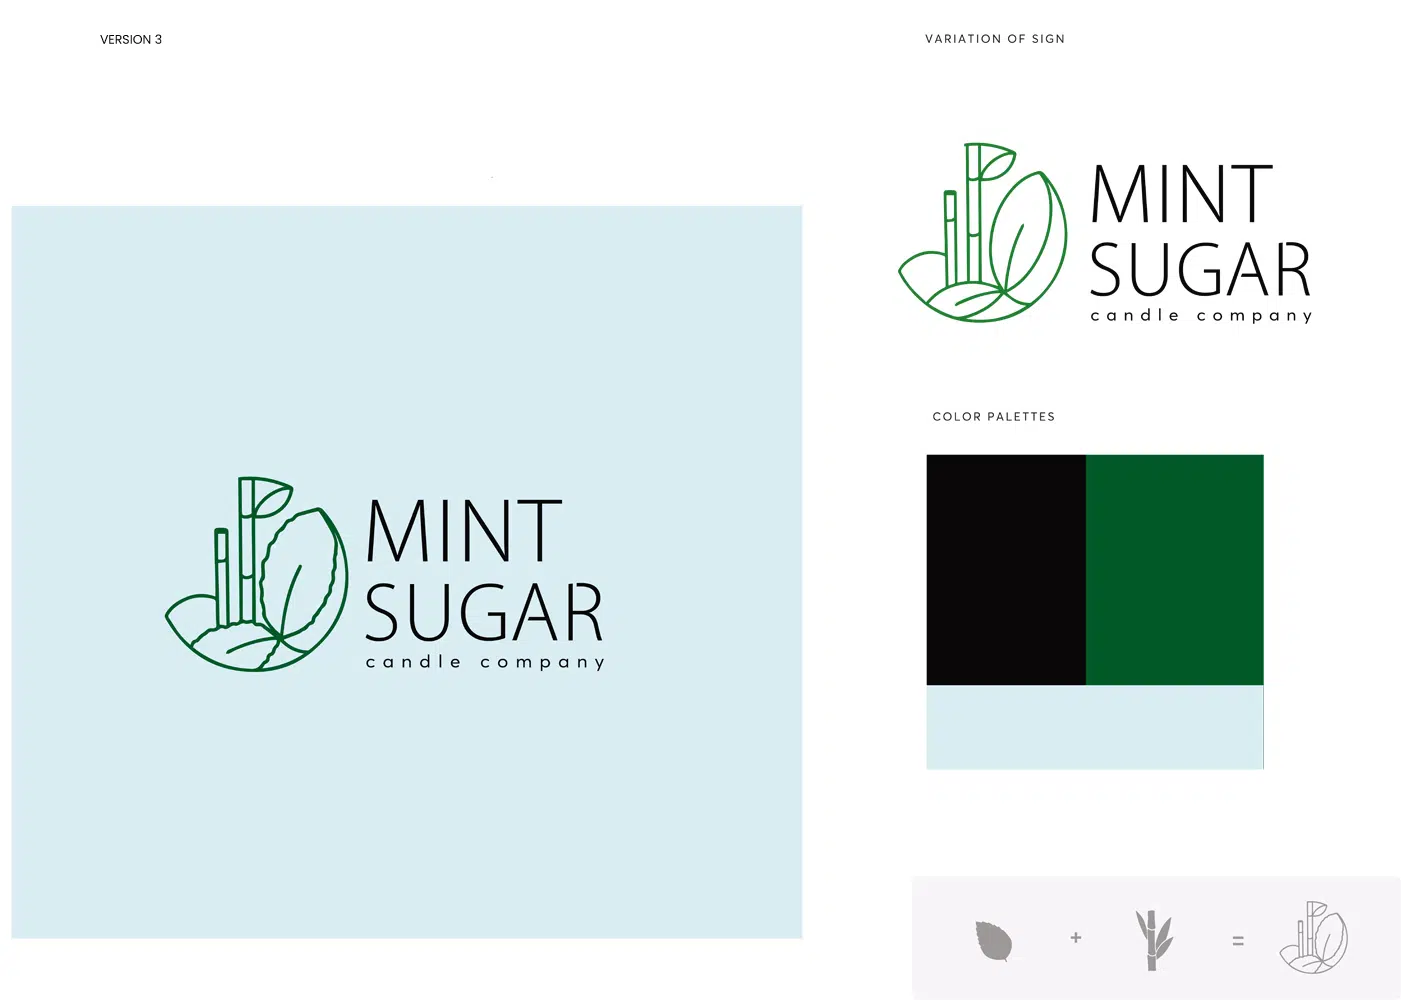 Mint Sugar logo presentation